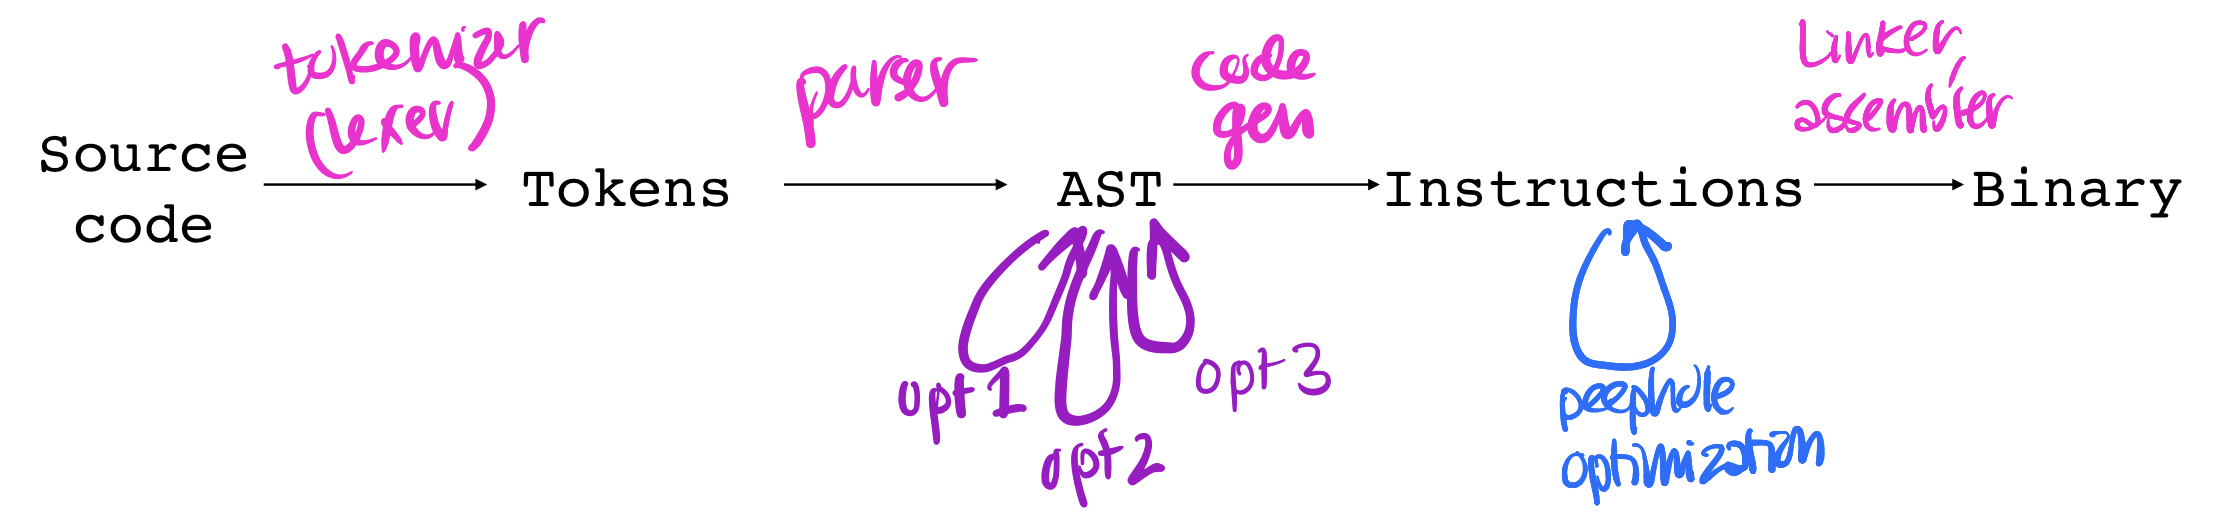 compiler-diagram.png